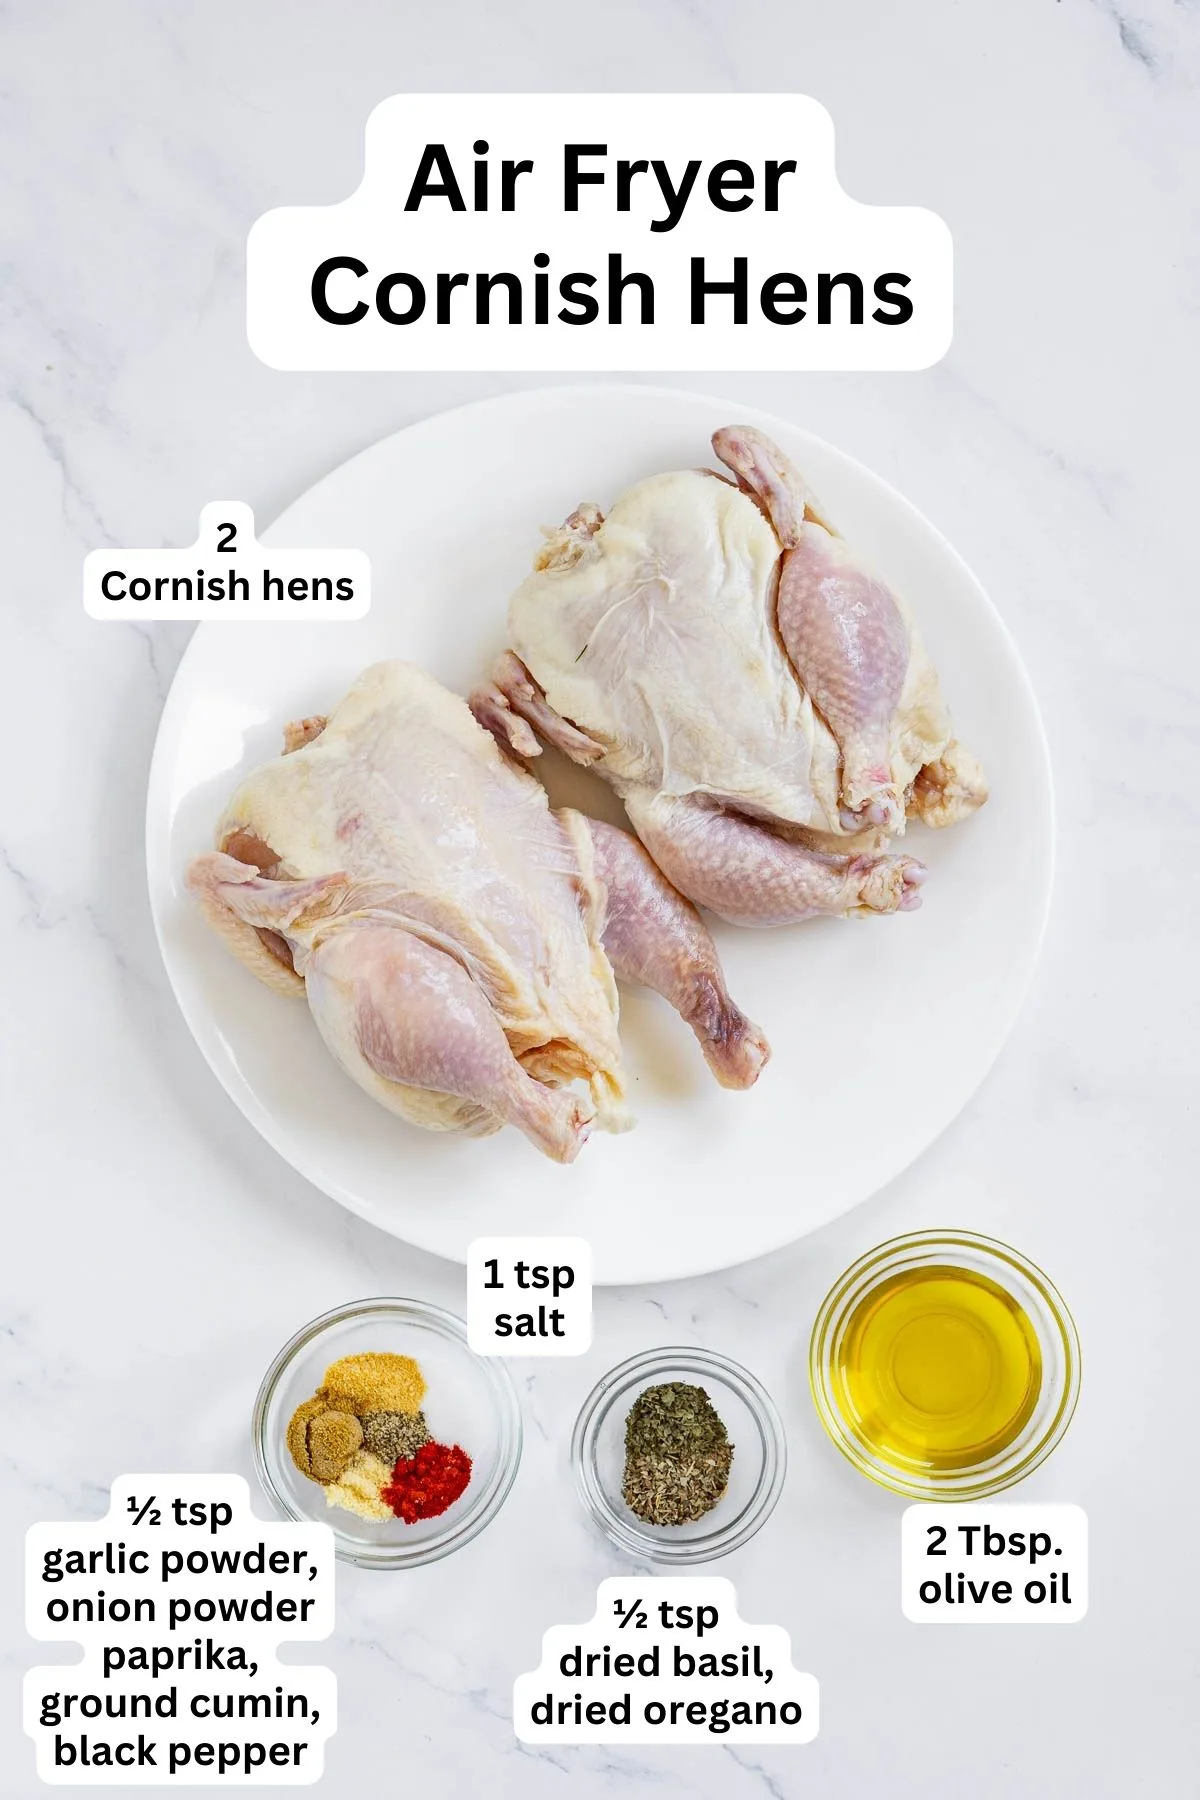 Ingredients to make air fryer Cornish hen